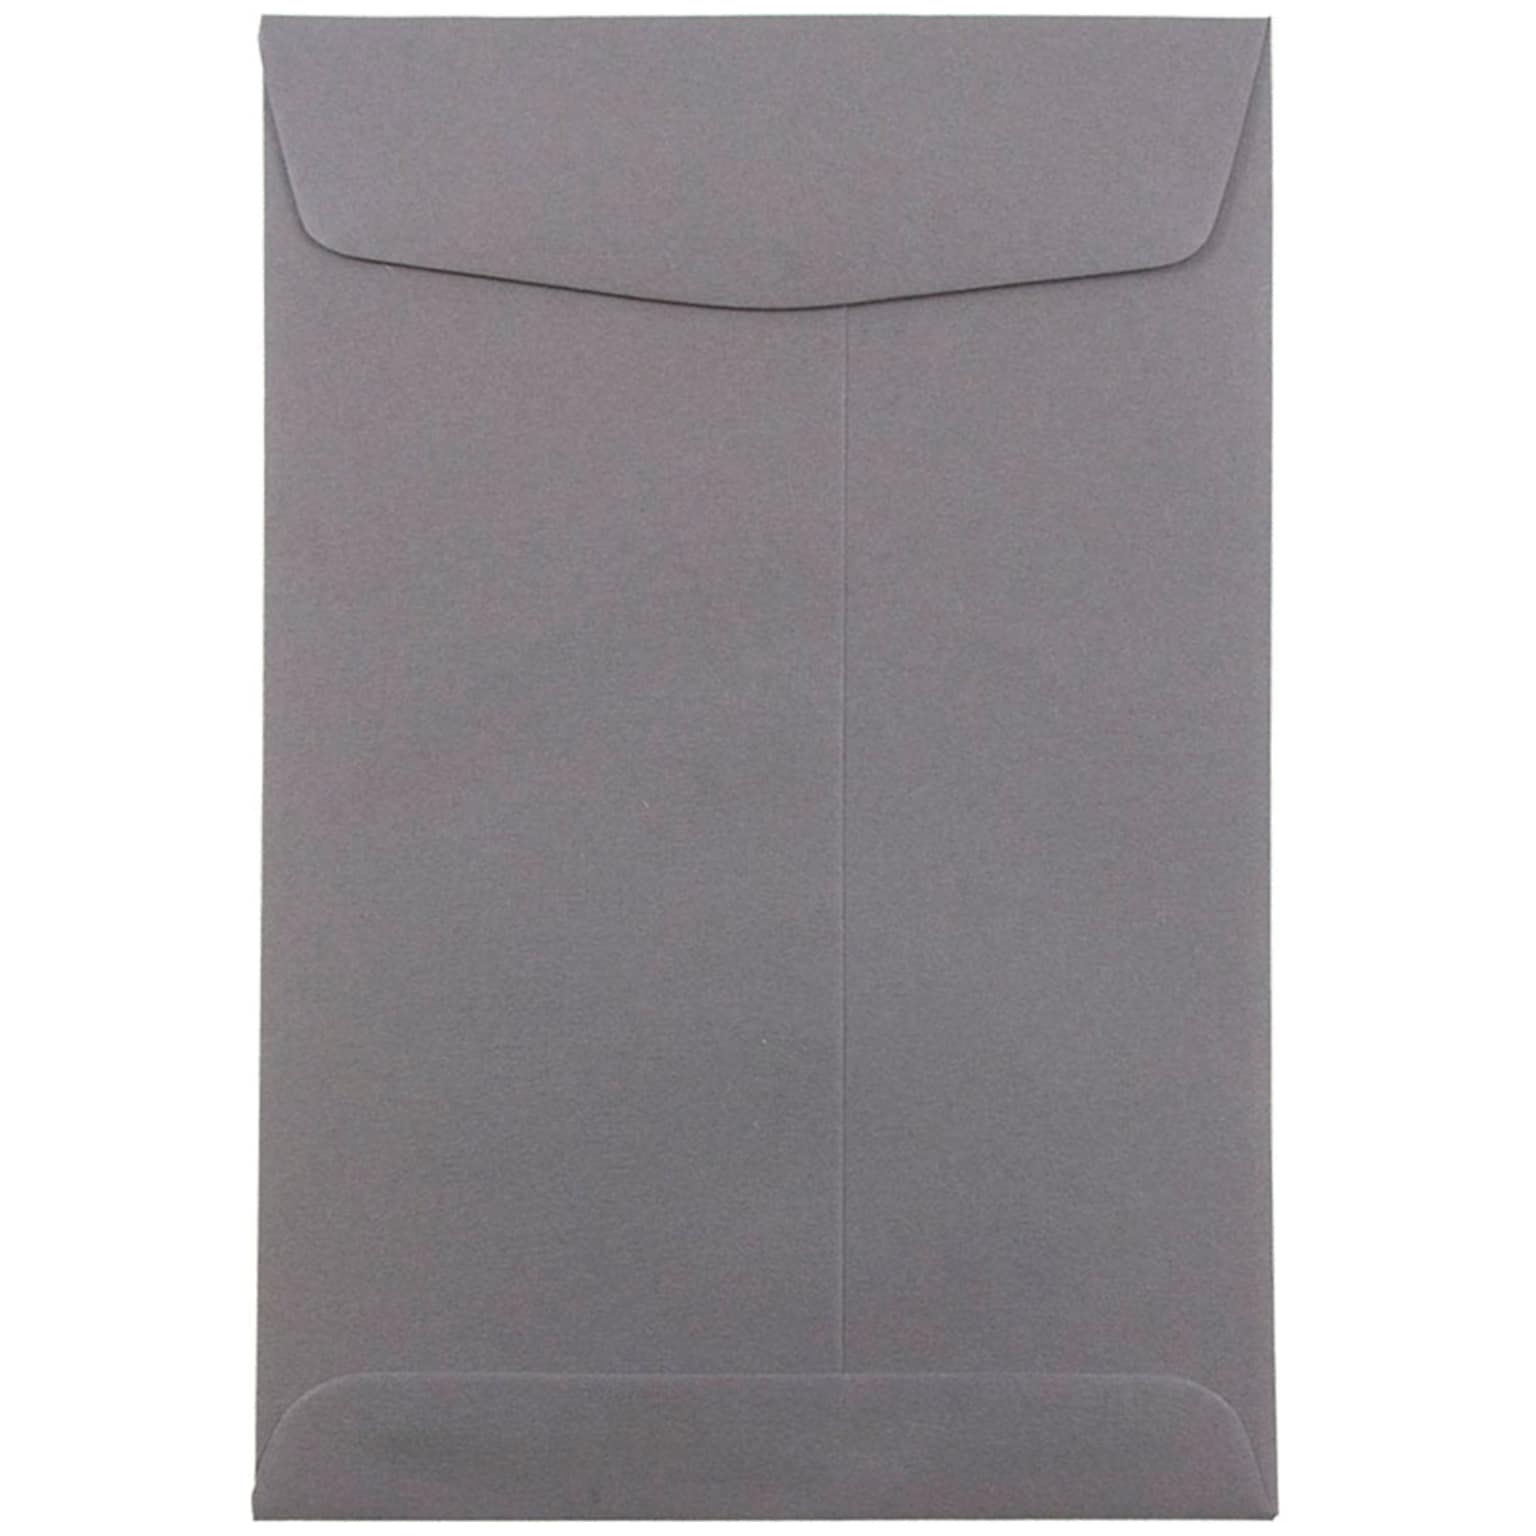 JAM Paper 6 x 9 Open End Catalog Envelopes, Dark Grey, 10/Pack (51285796B)